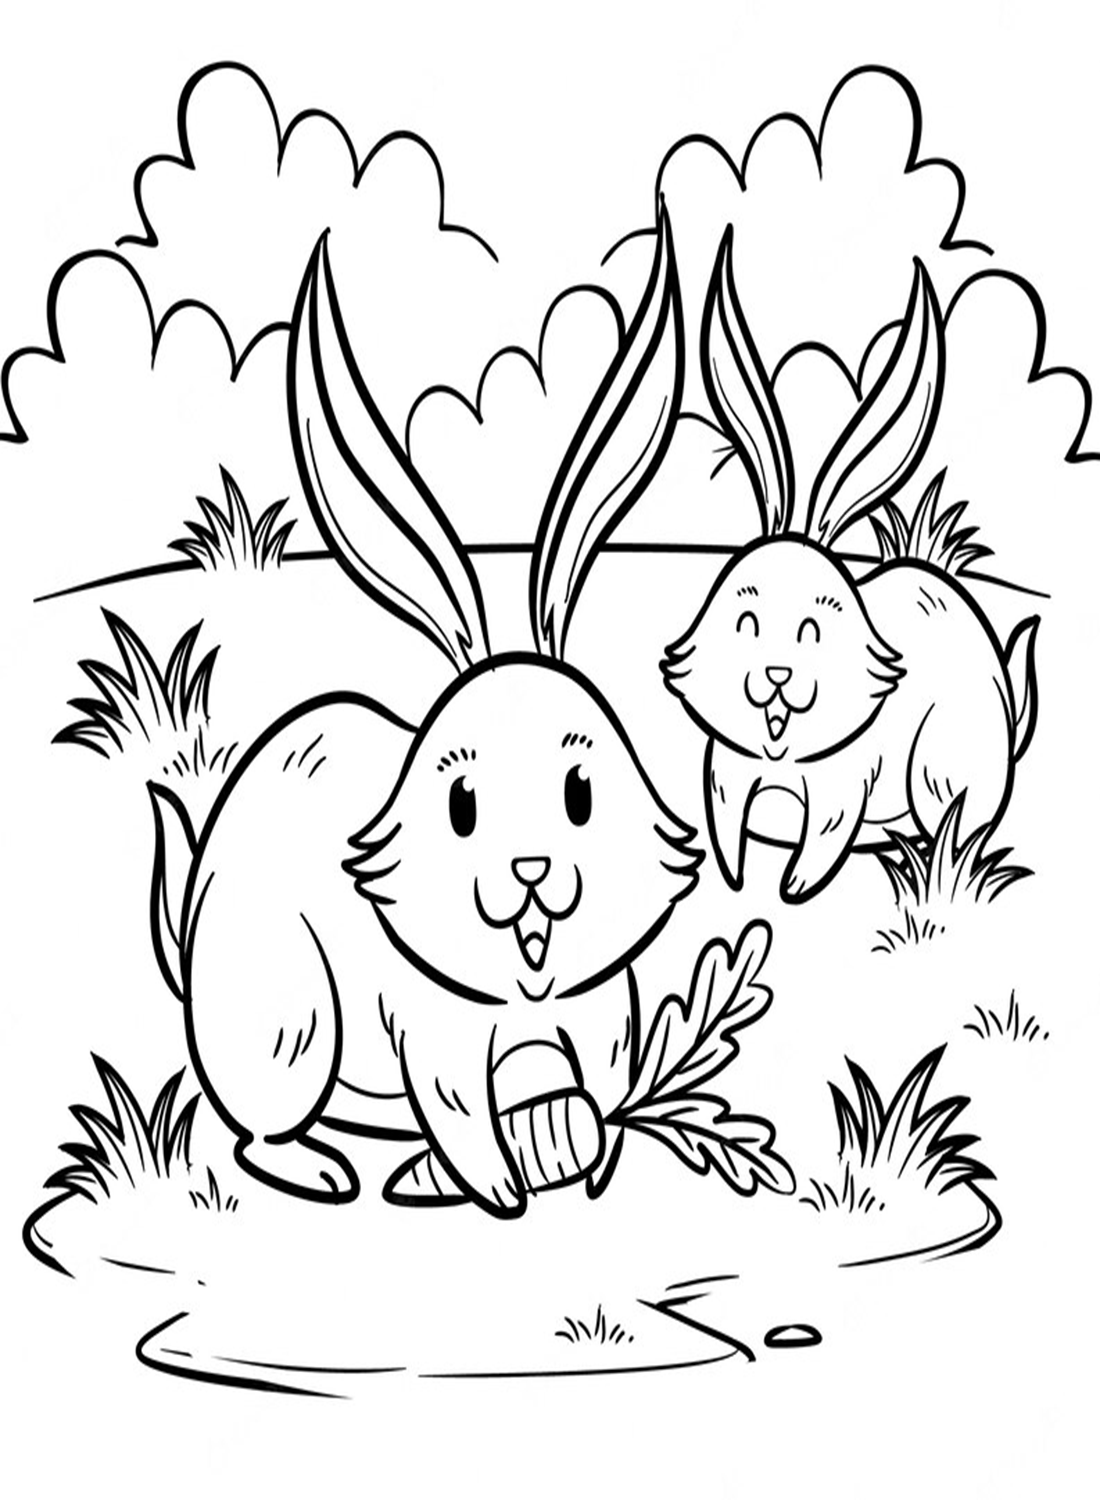 Два кролика играют на траве из мультфильма "Кролик"